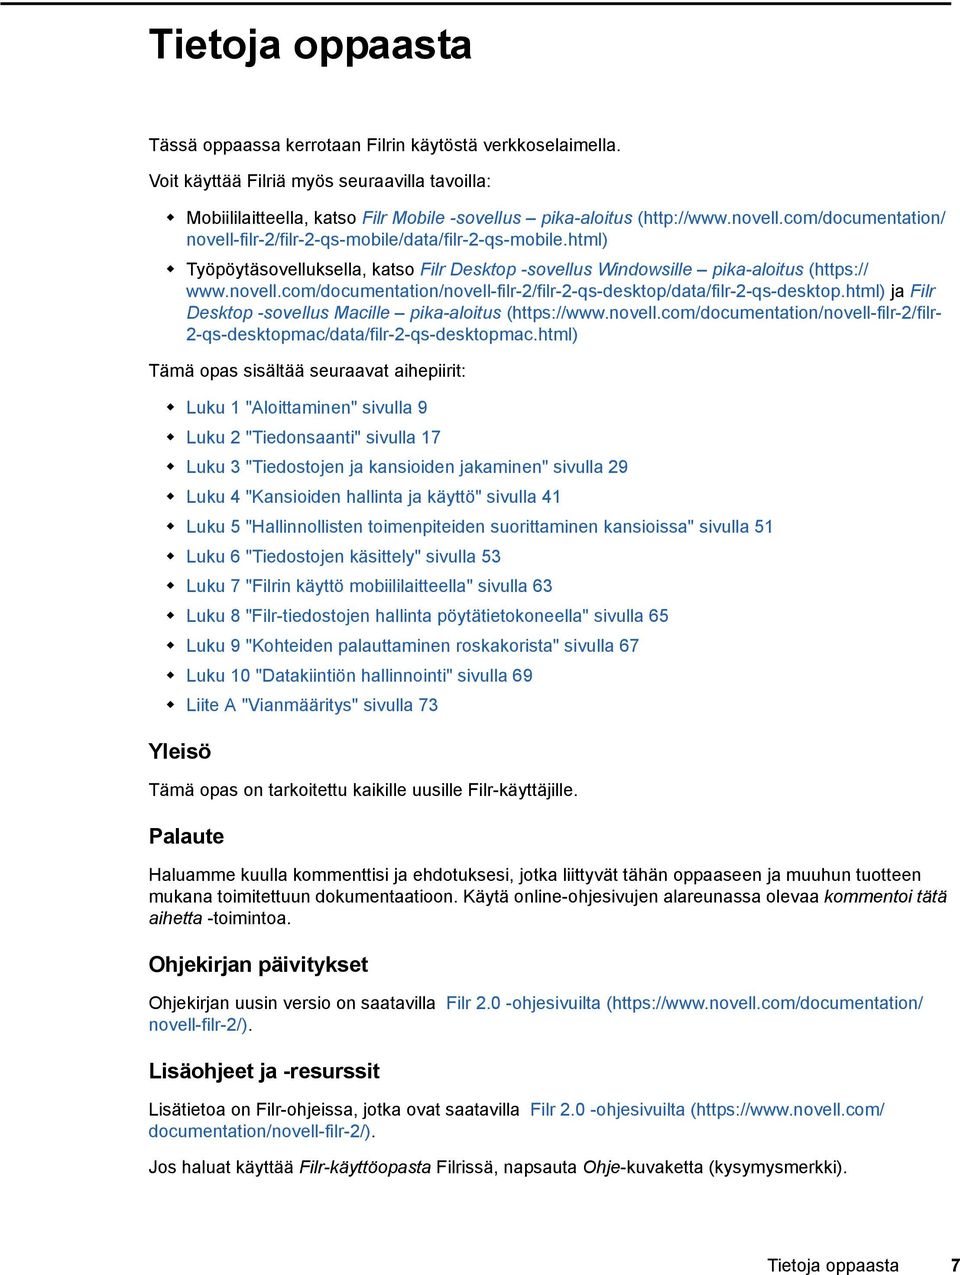 html) ja Filr Desktop -sovellus Macille pika-aloitus (https://www.novell.com/documentation/novell-filr-2/filr- 2-qs-desktopmac/data/filr-2-qs-desktopmac.